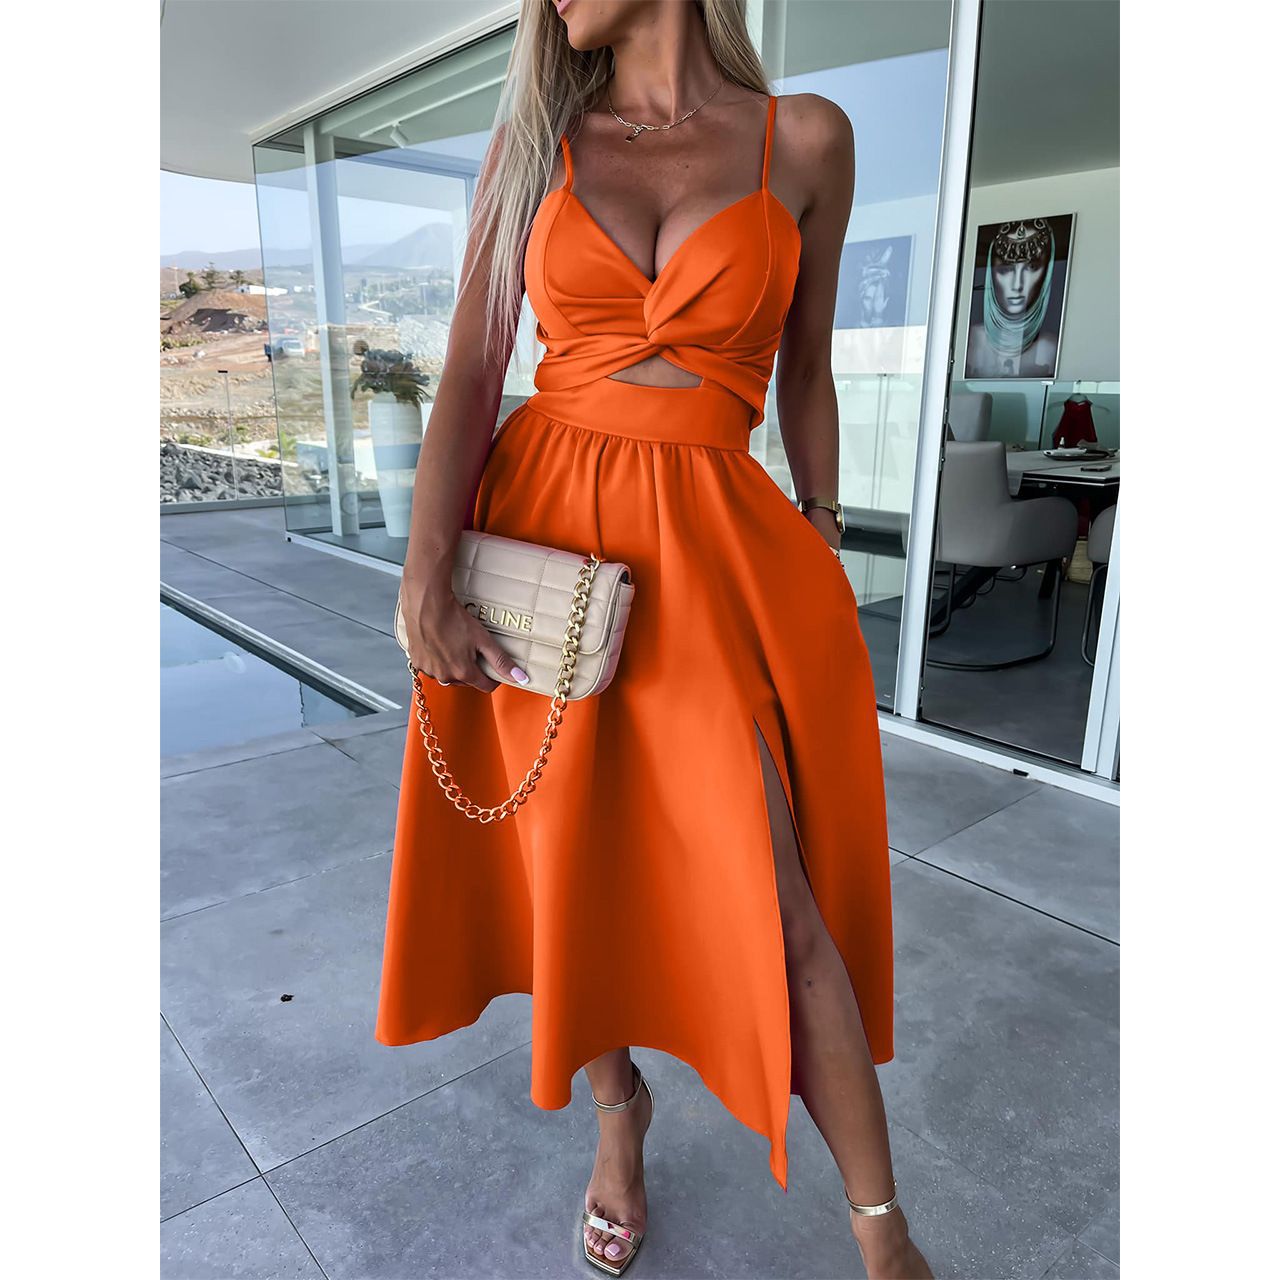 Elegant Midriff Baring Summer Dresses-Dresses-Orange-S-Free Shipping Leatheretro